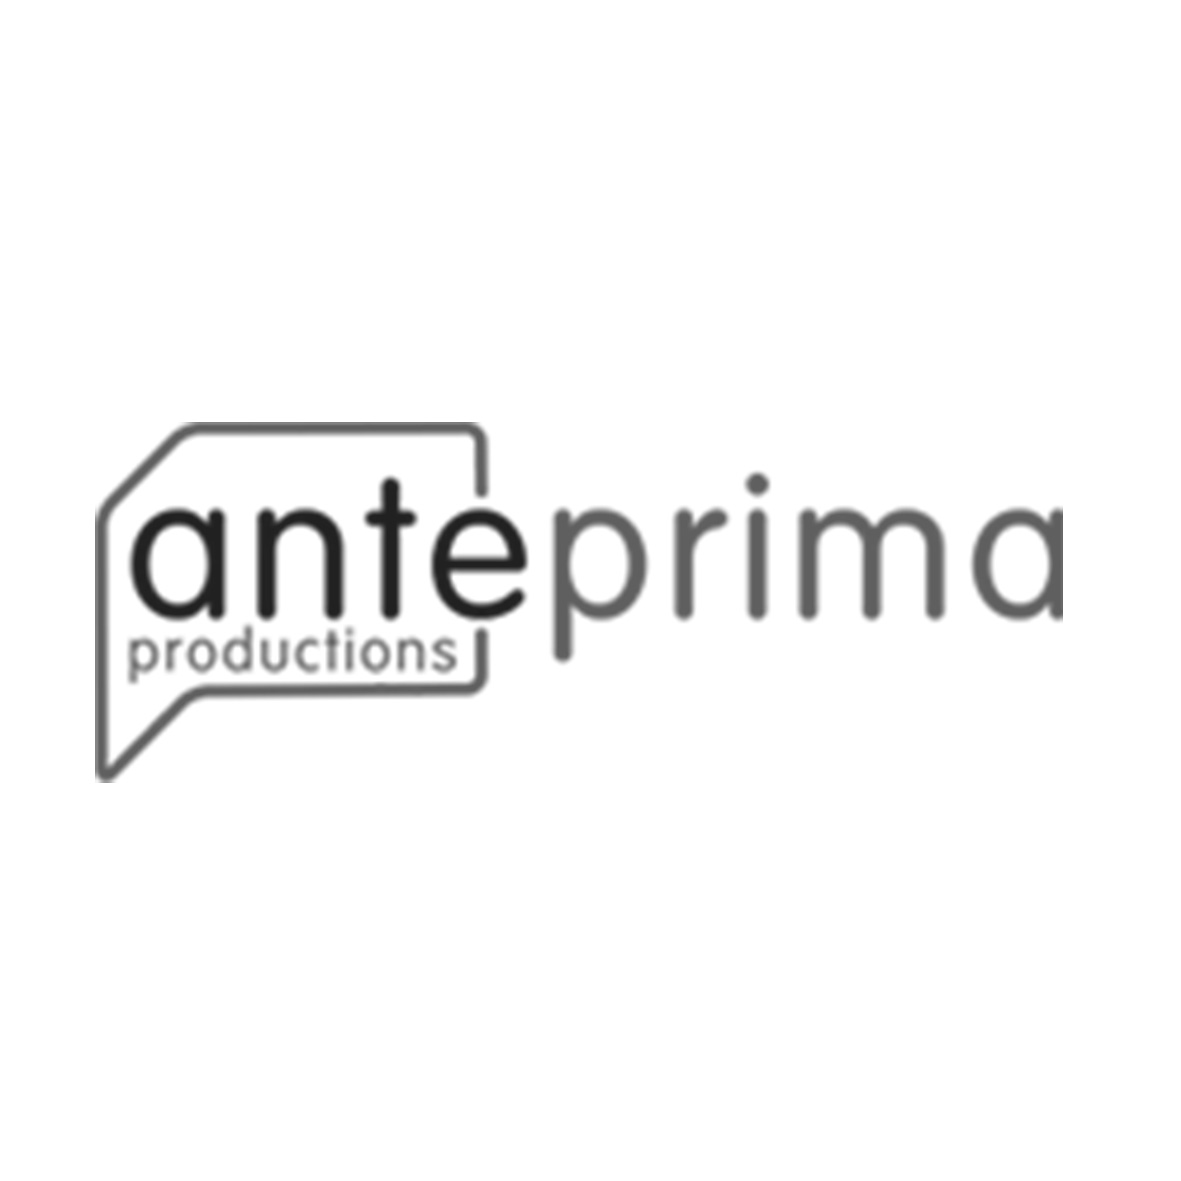 Anteprima-netb